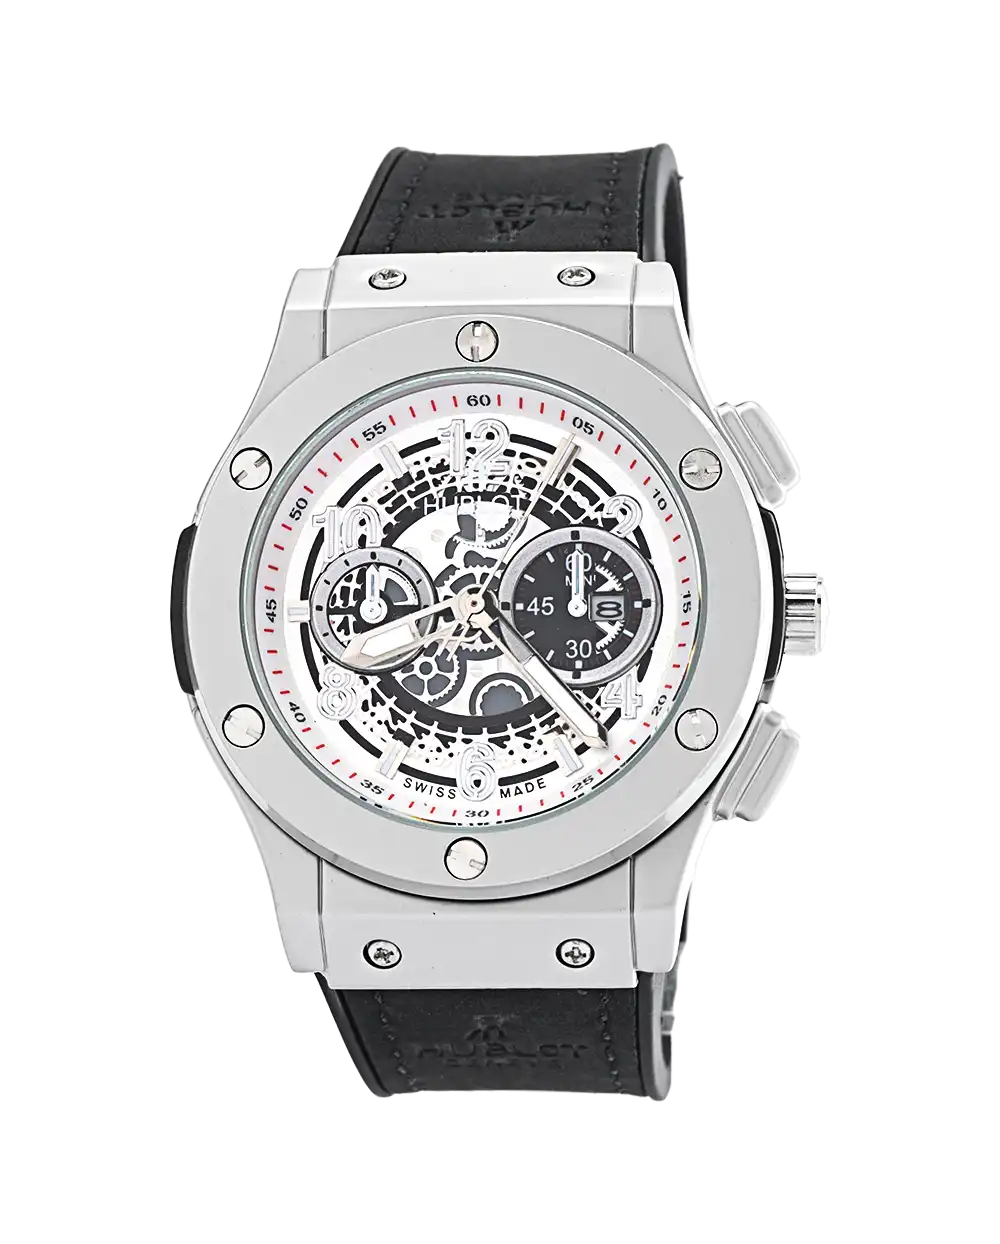 خرید ساعت مچی مردانه هابلوت HUBLOT طرح big bang مدل 1723 با بهترین قیمت به همراه ارسال رایگان به سراسر ایران و جعبه ی ساعت | ساعت اوبلو مردانه